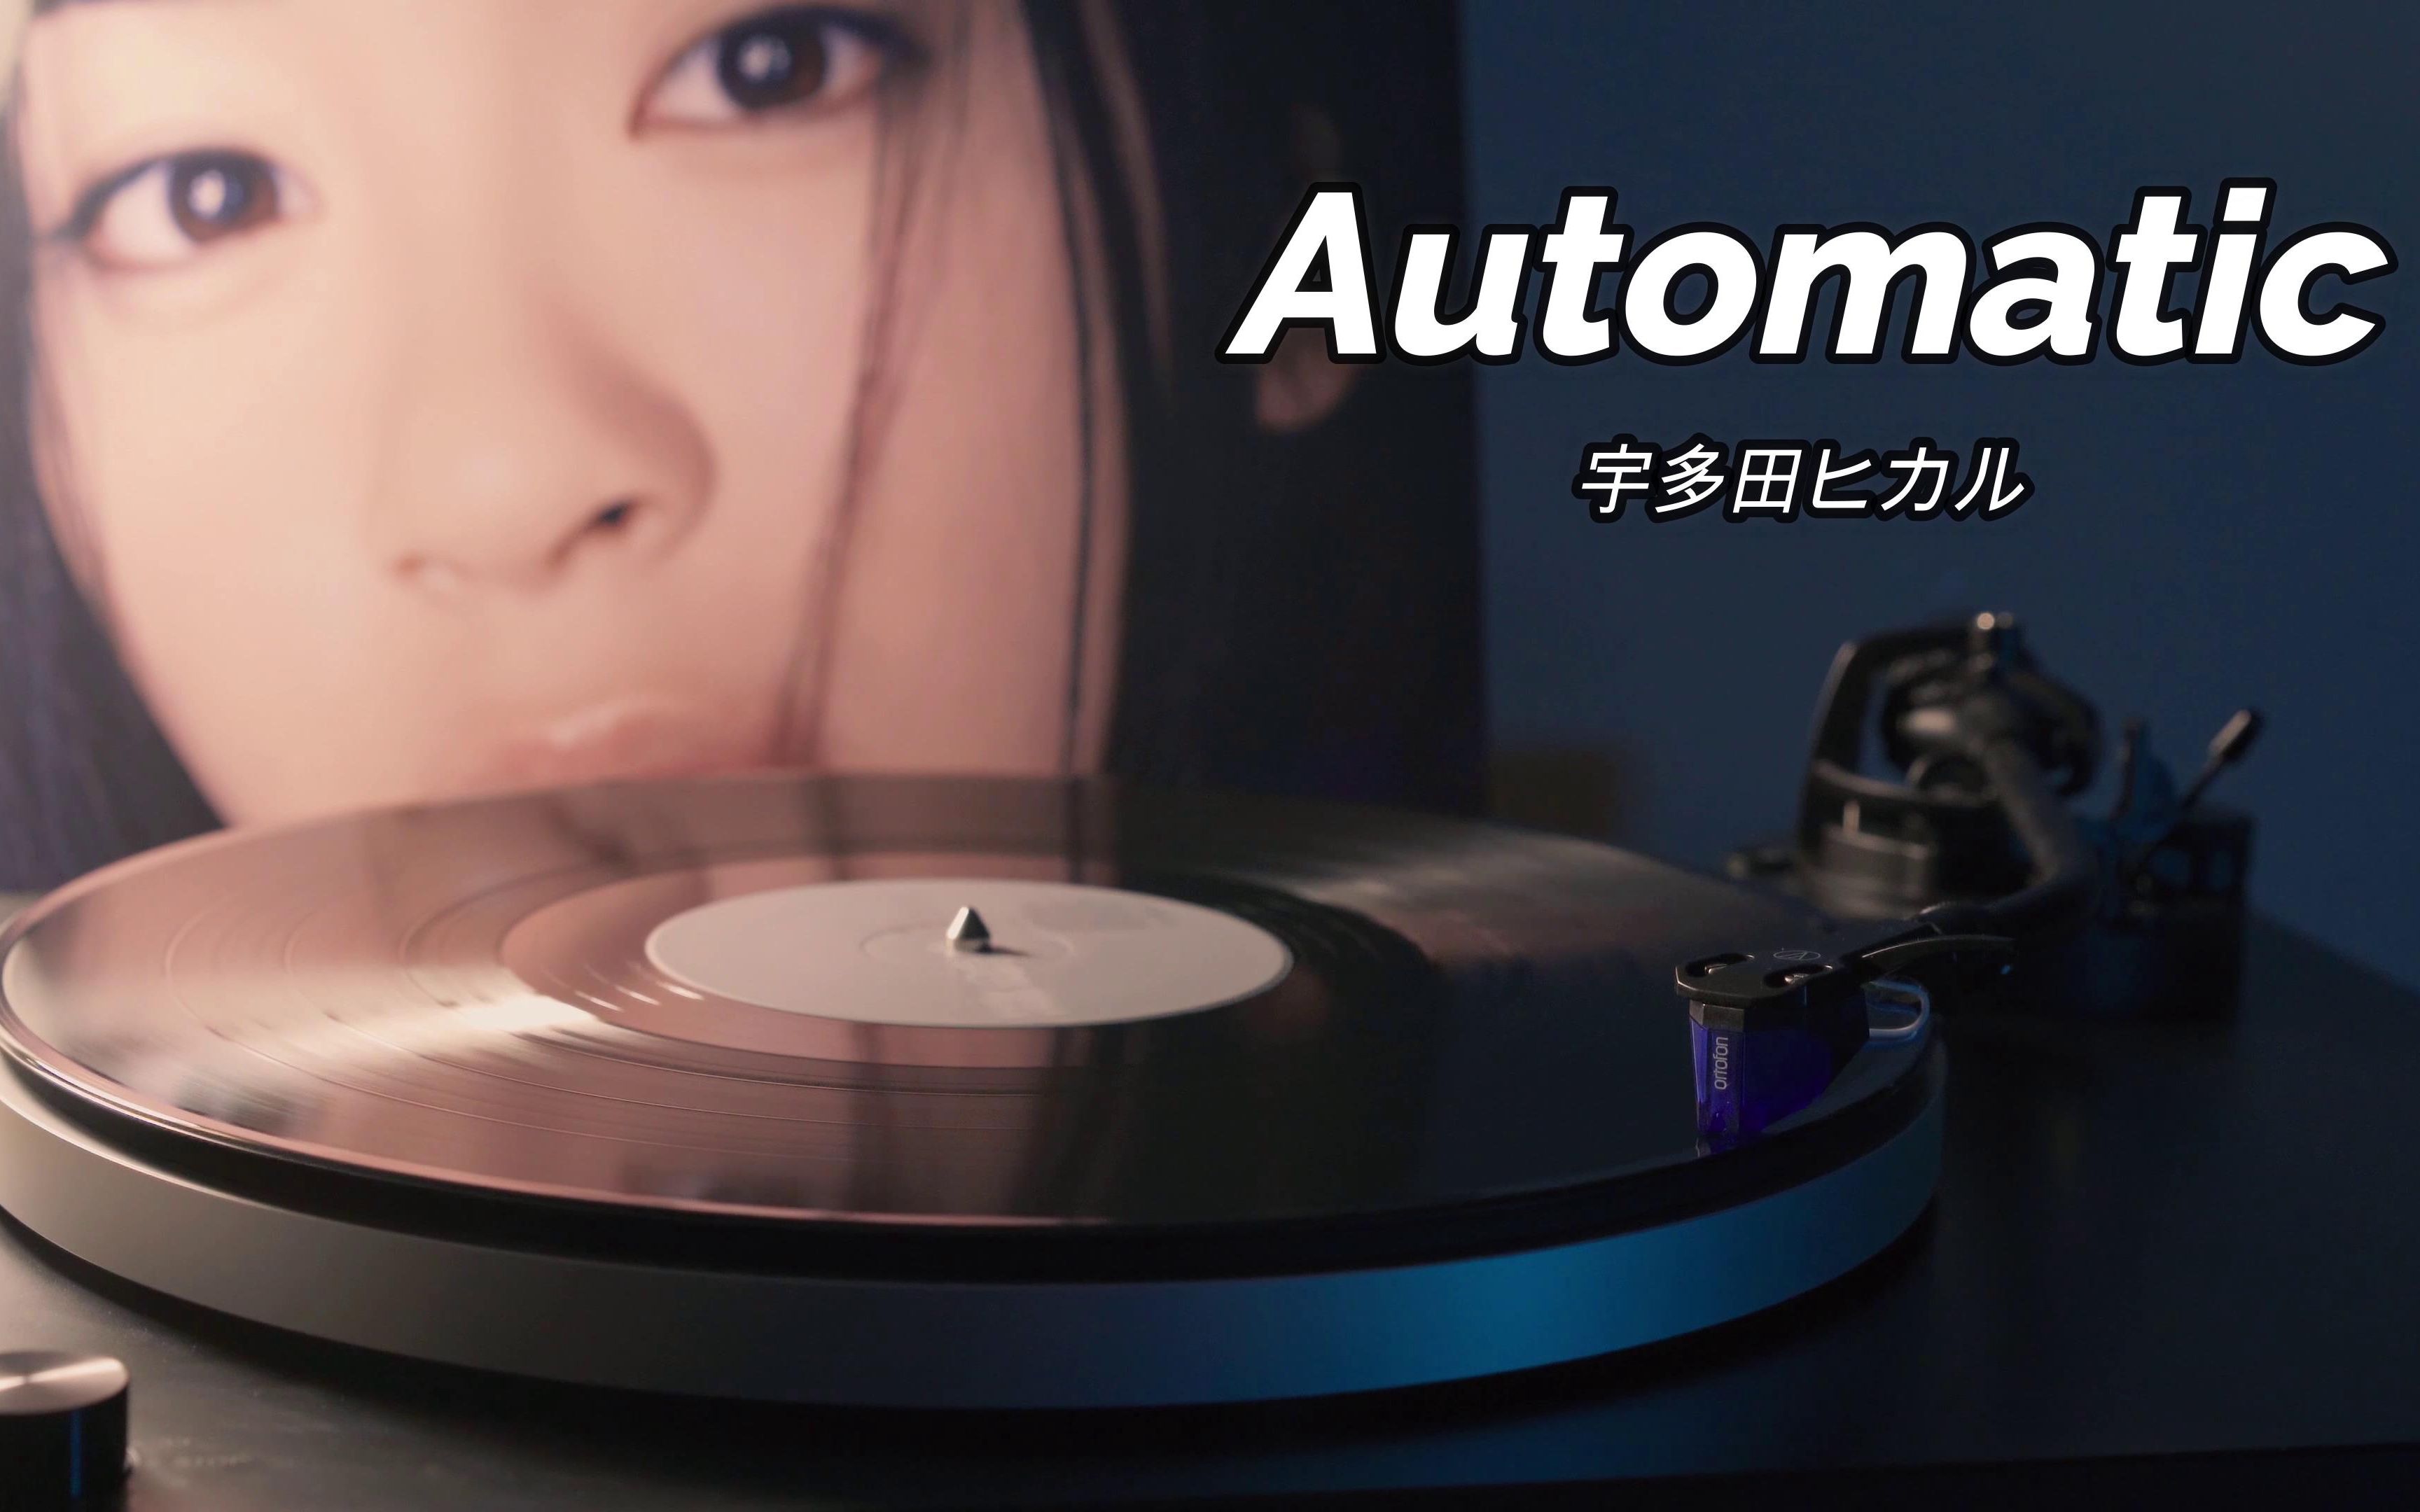 【4K】宇多田光《Automatic》高音质黑胶唱片试听